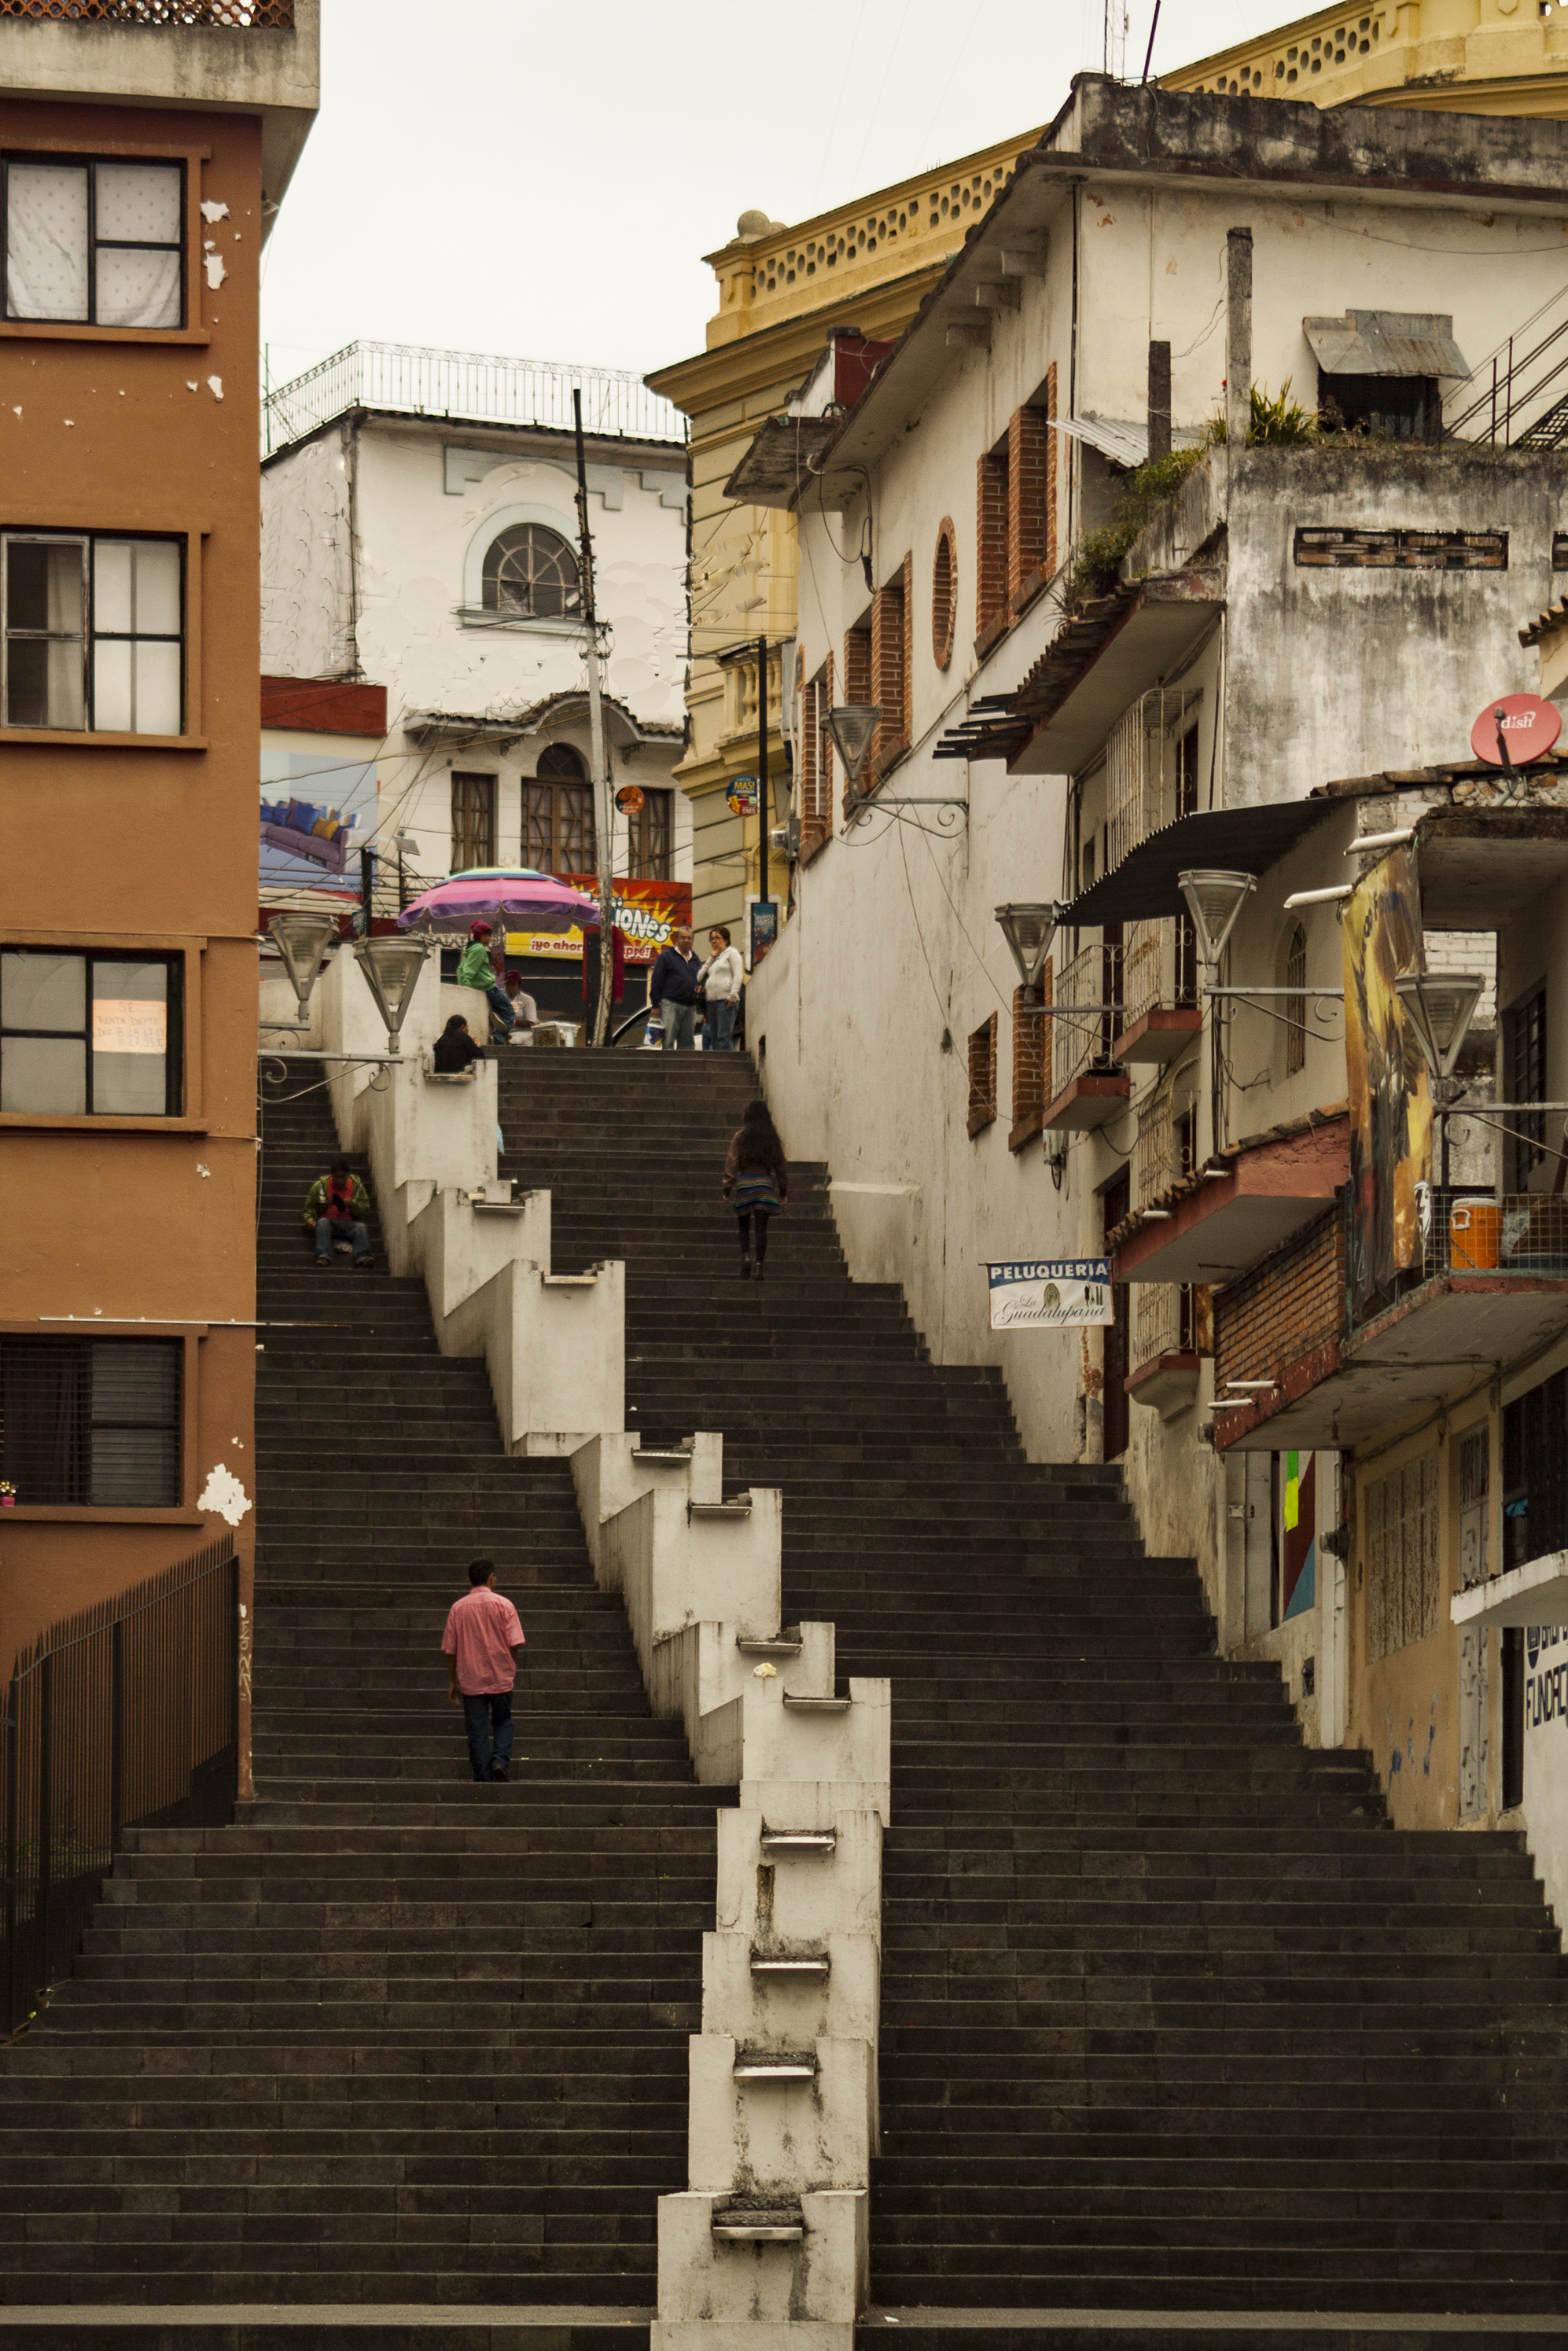 Escaleras de la calle Centro de Xalapa, Veracruz, México